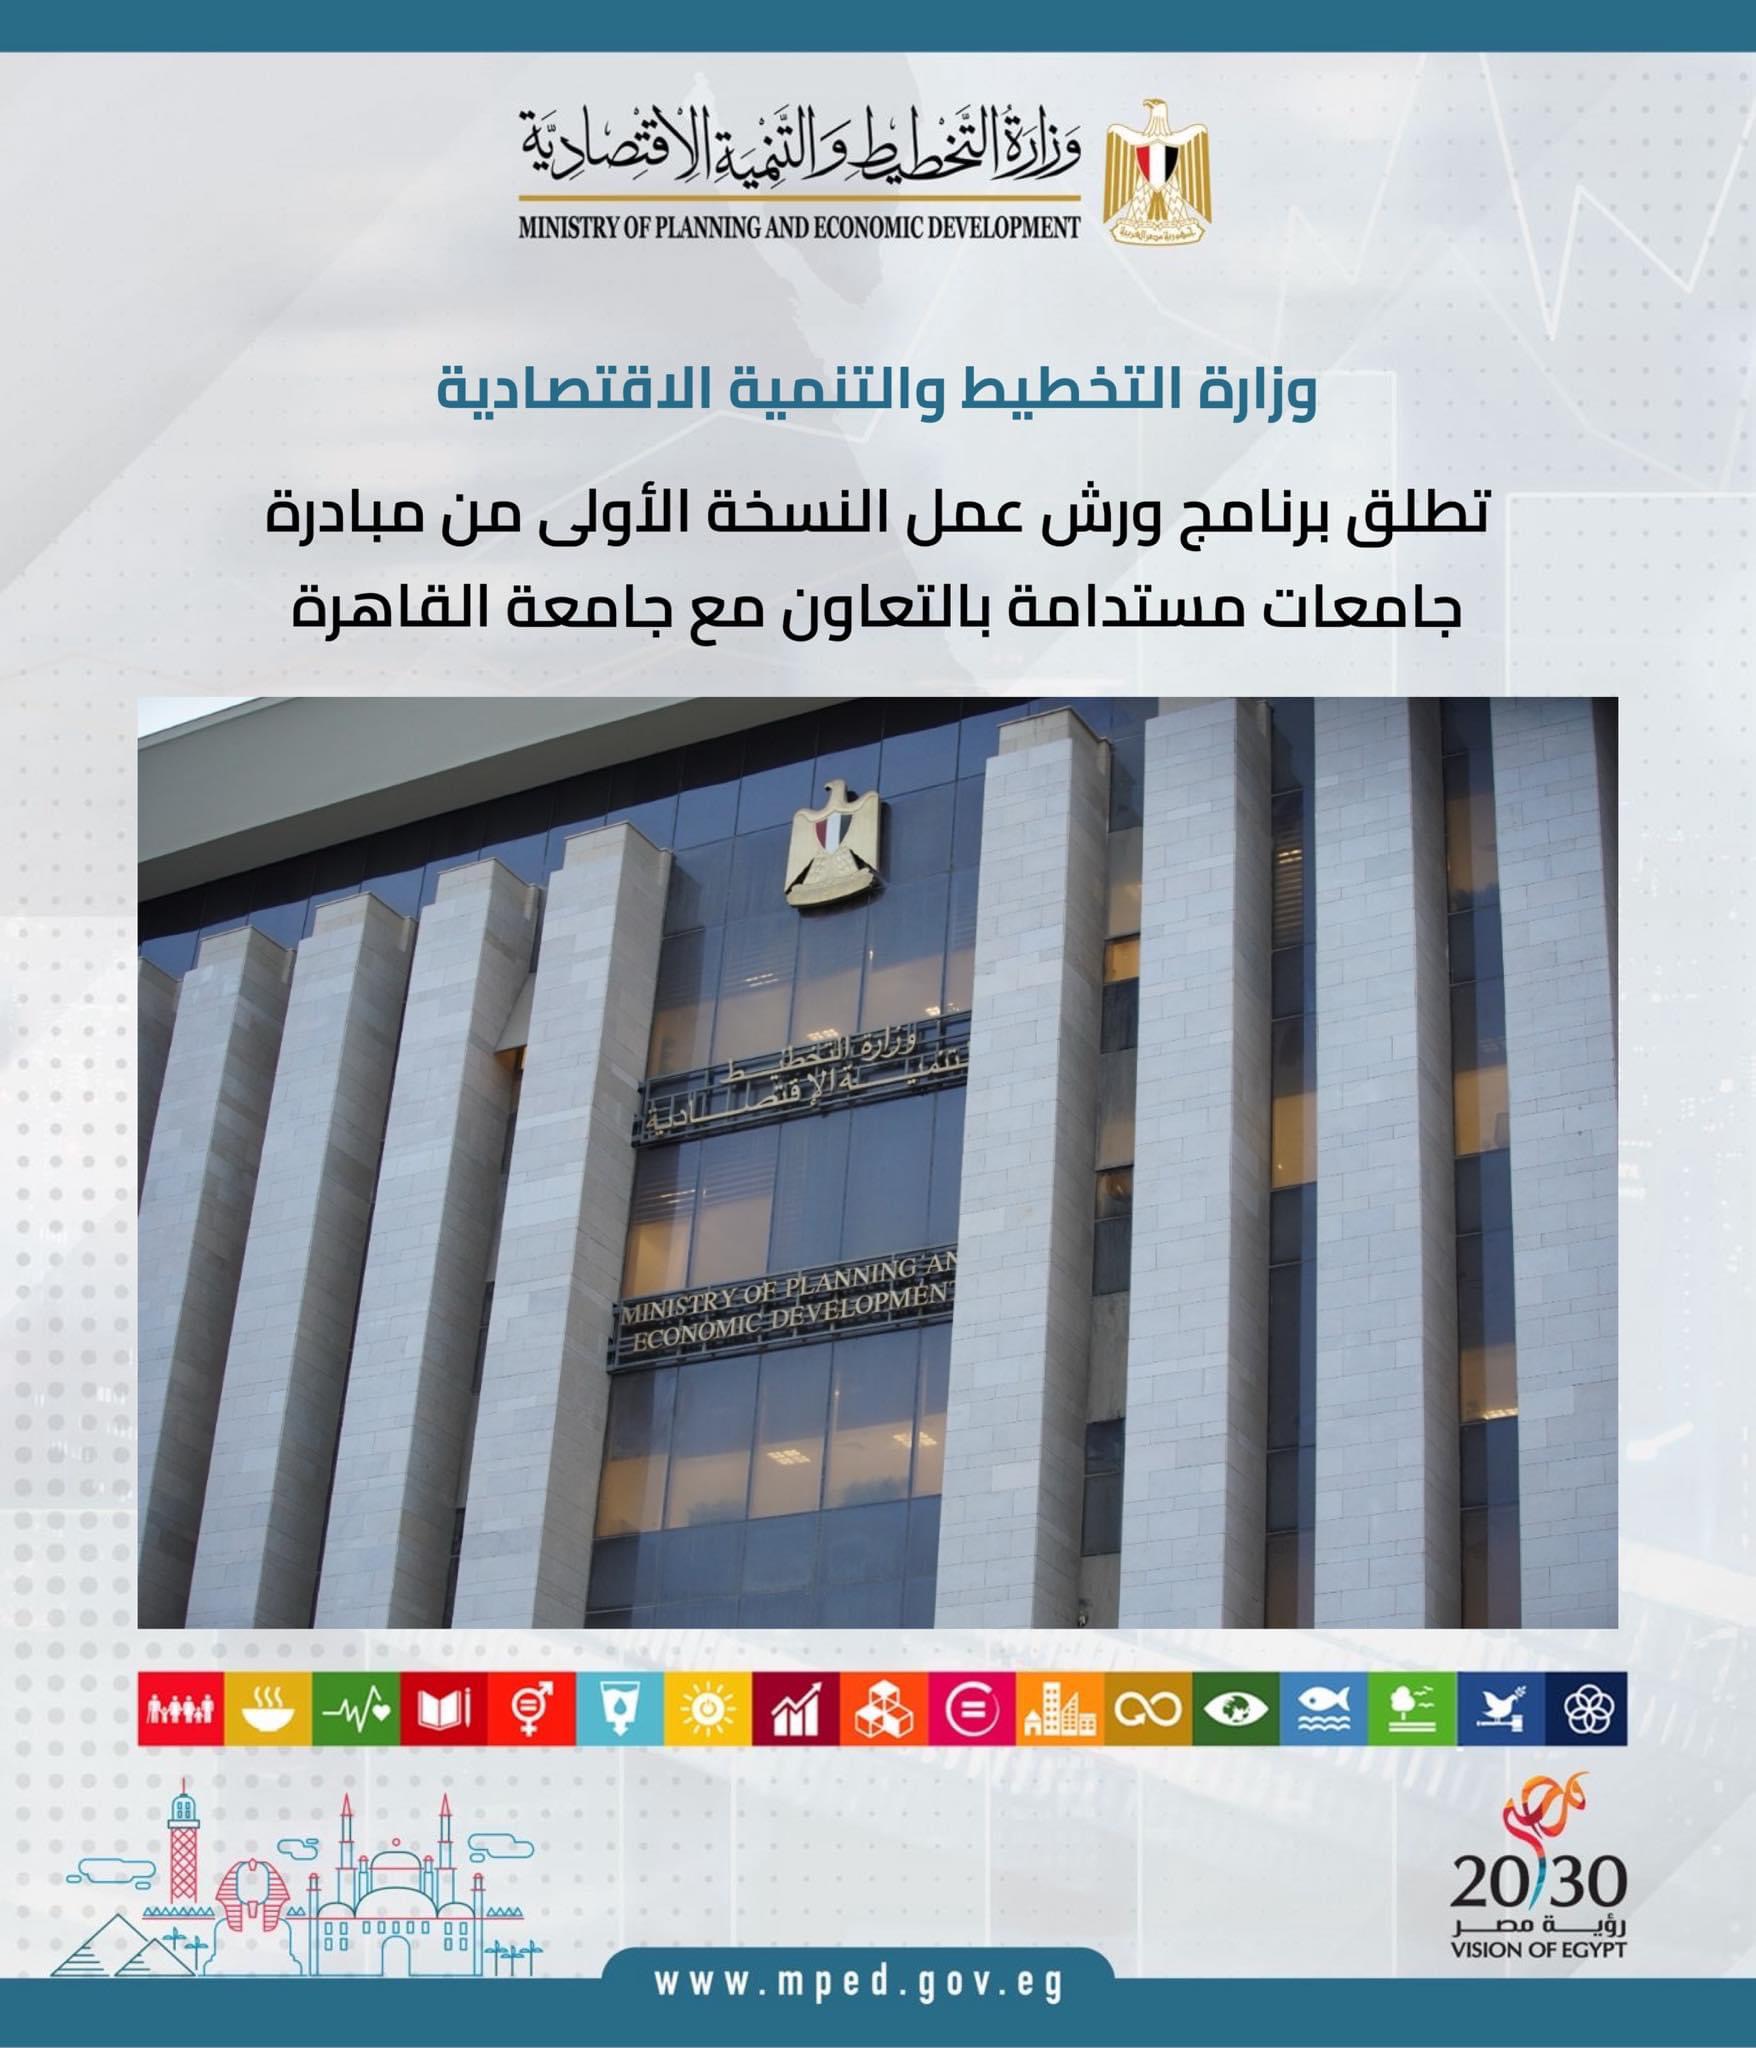 وزارة التخطيط والتنمية الاقتصادية تطلق برنامج ورش عمل النسخة الأولى من مبادرة جامعات مستدامة بالتعاون مع جامعة القاهرة